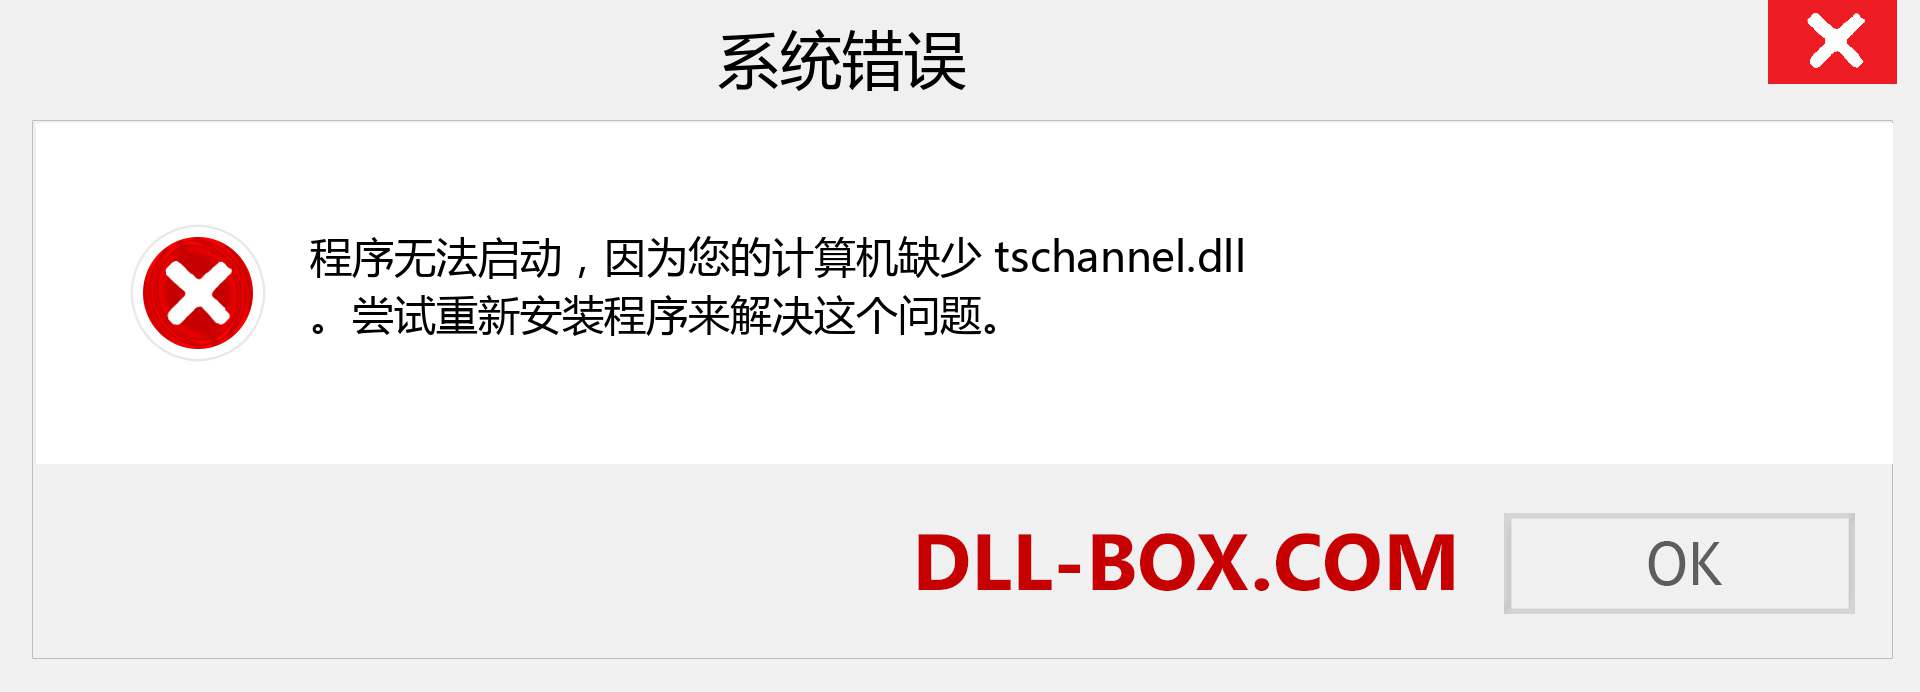 tschannel.dll 文件丢失？。 适用于 Windows 7、8、10 的下载 - 修复 Windows、照片、图像上的 tschannel dll 丢失错误